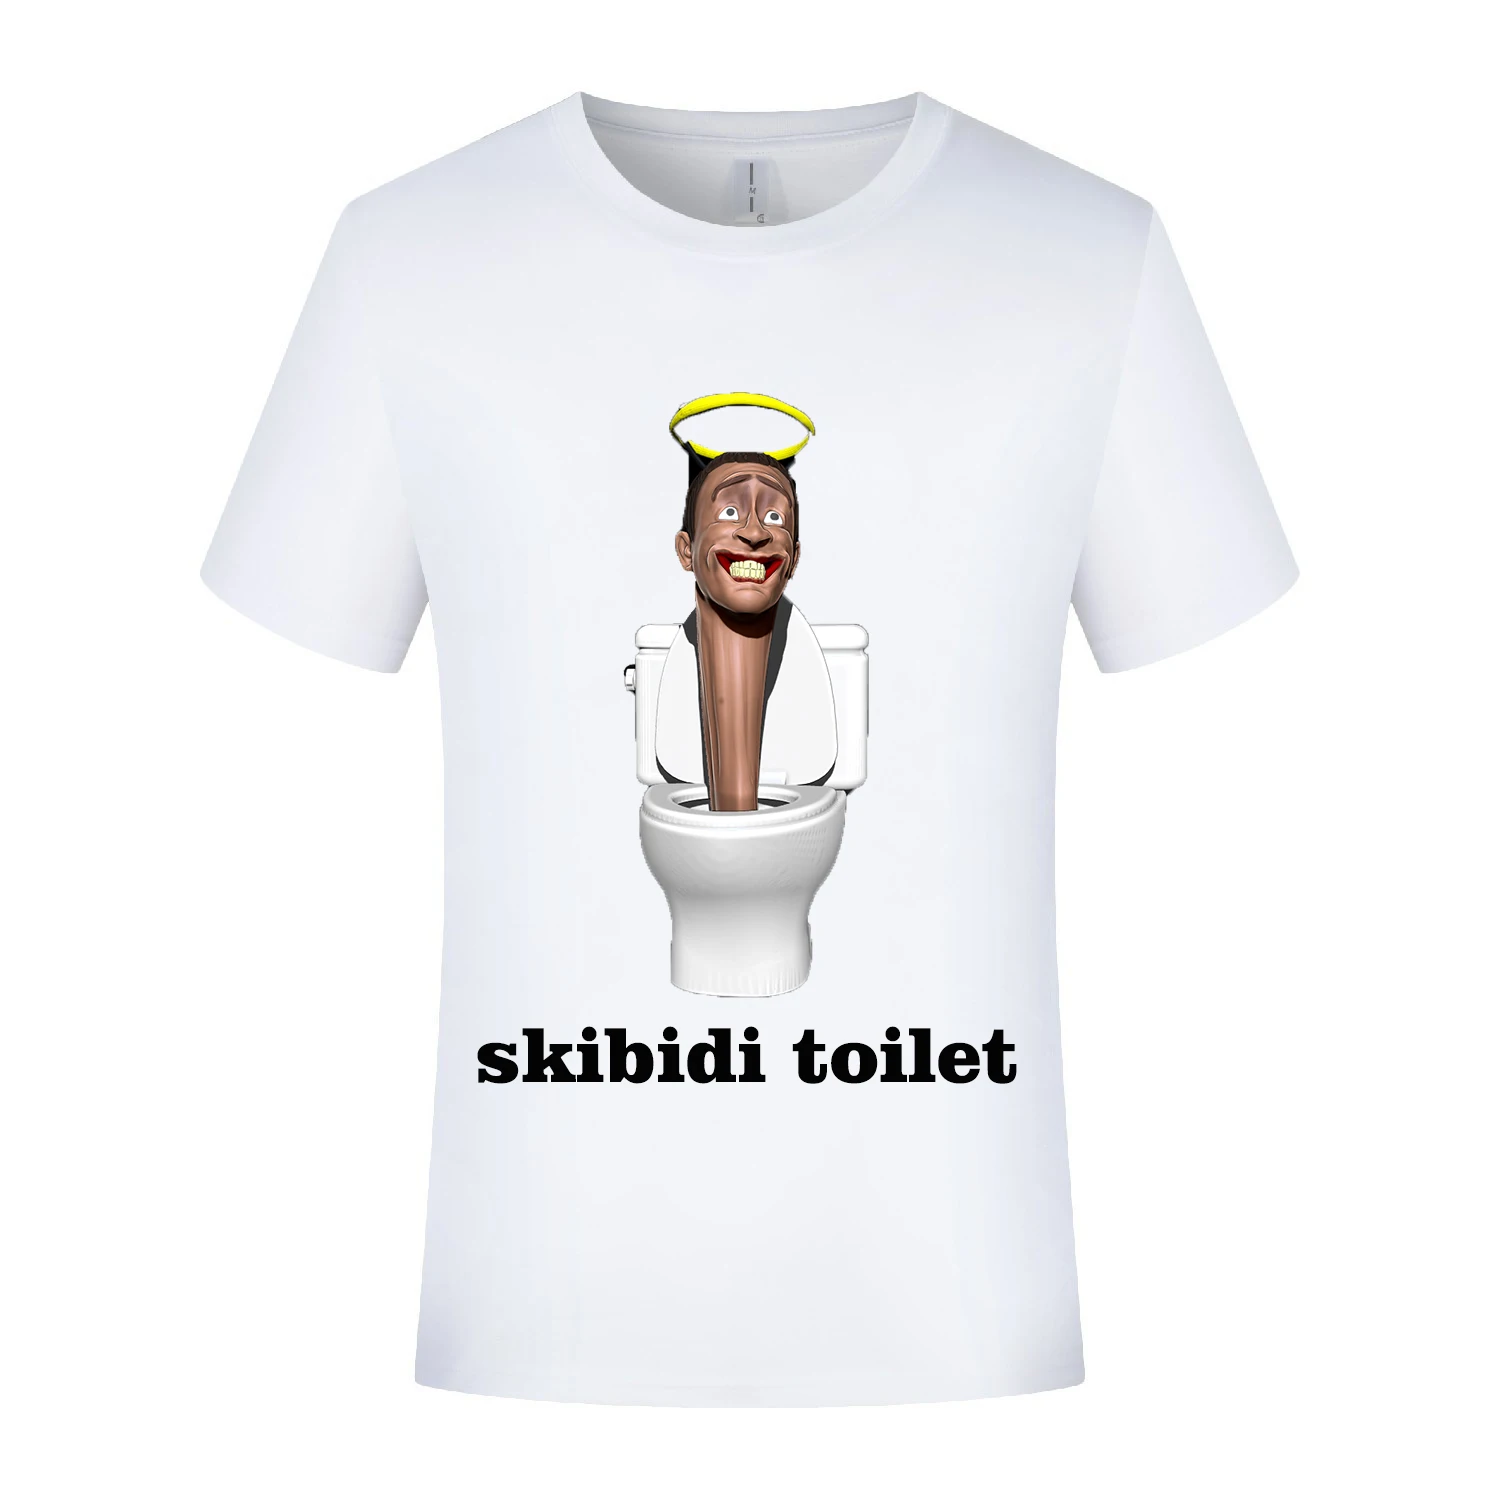 S318c41aa71cf4871ad68274f3eaeff1bZ - Skibidi Toilet Plush